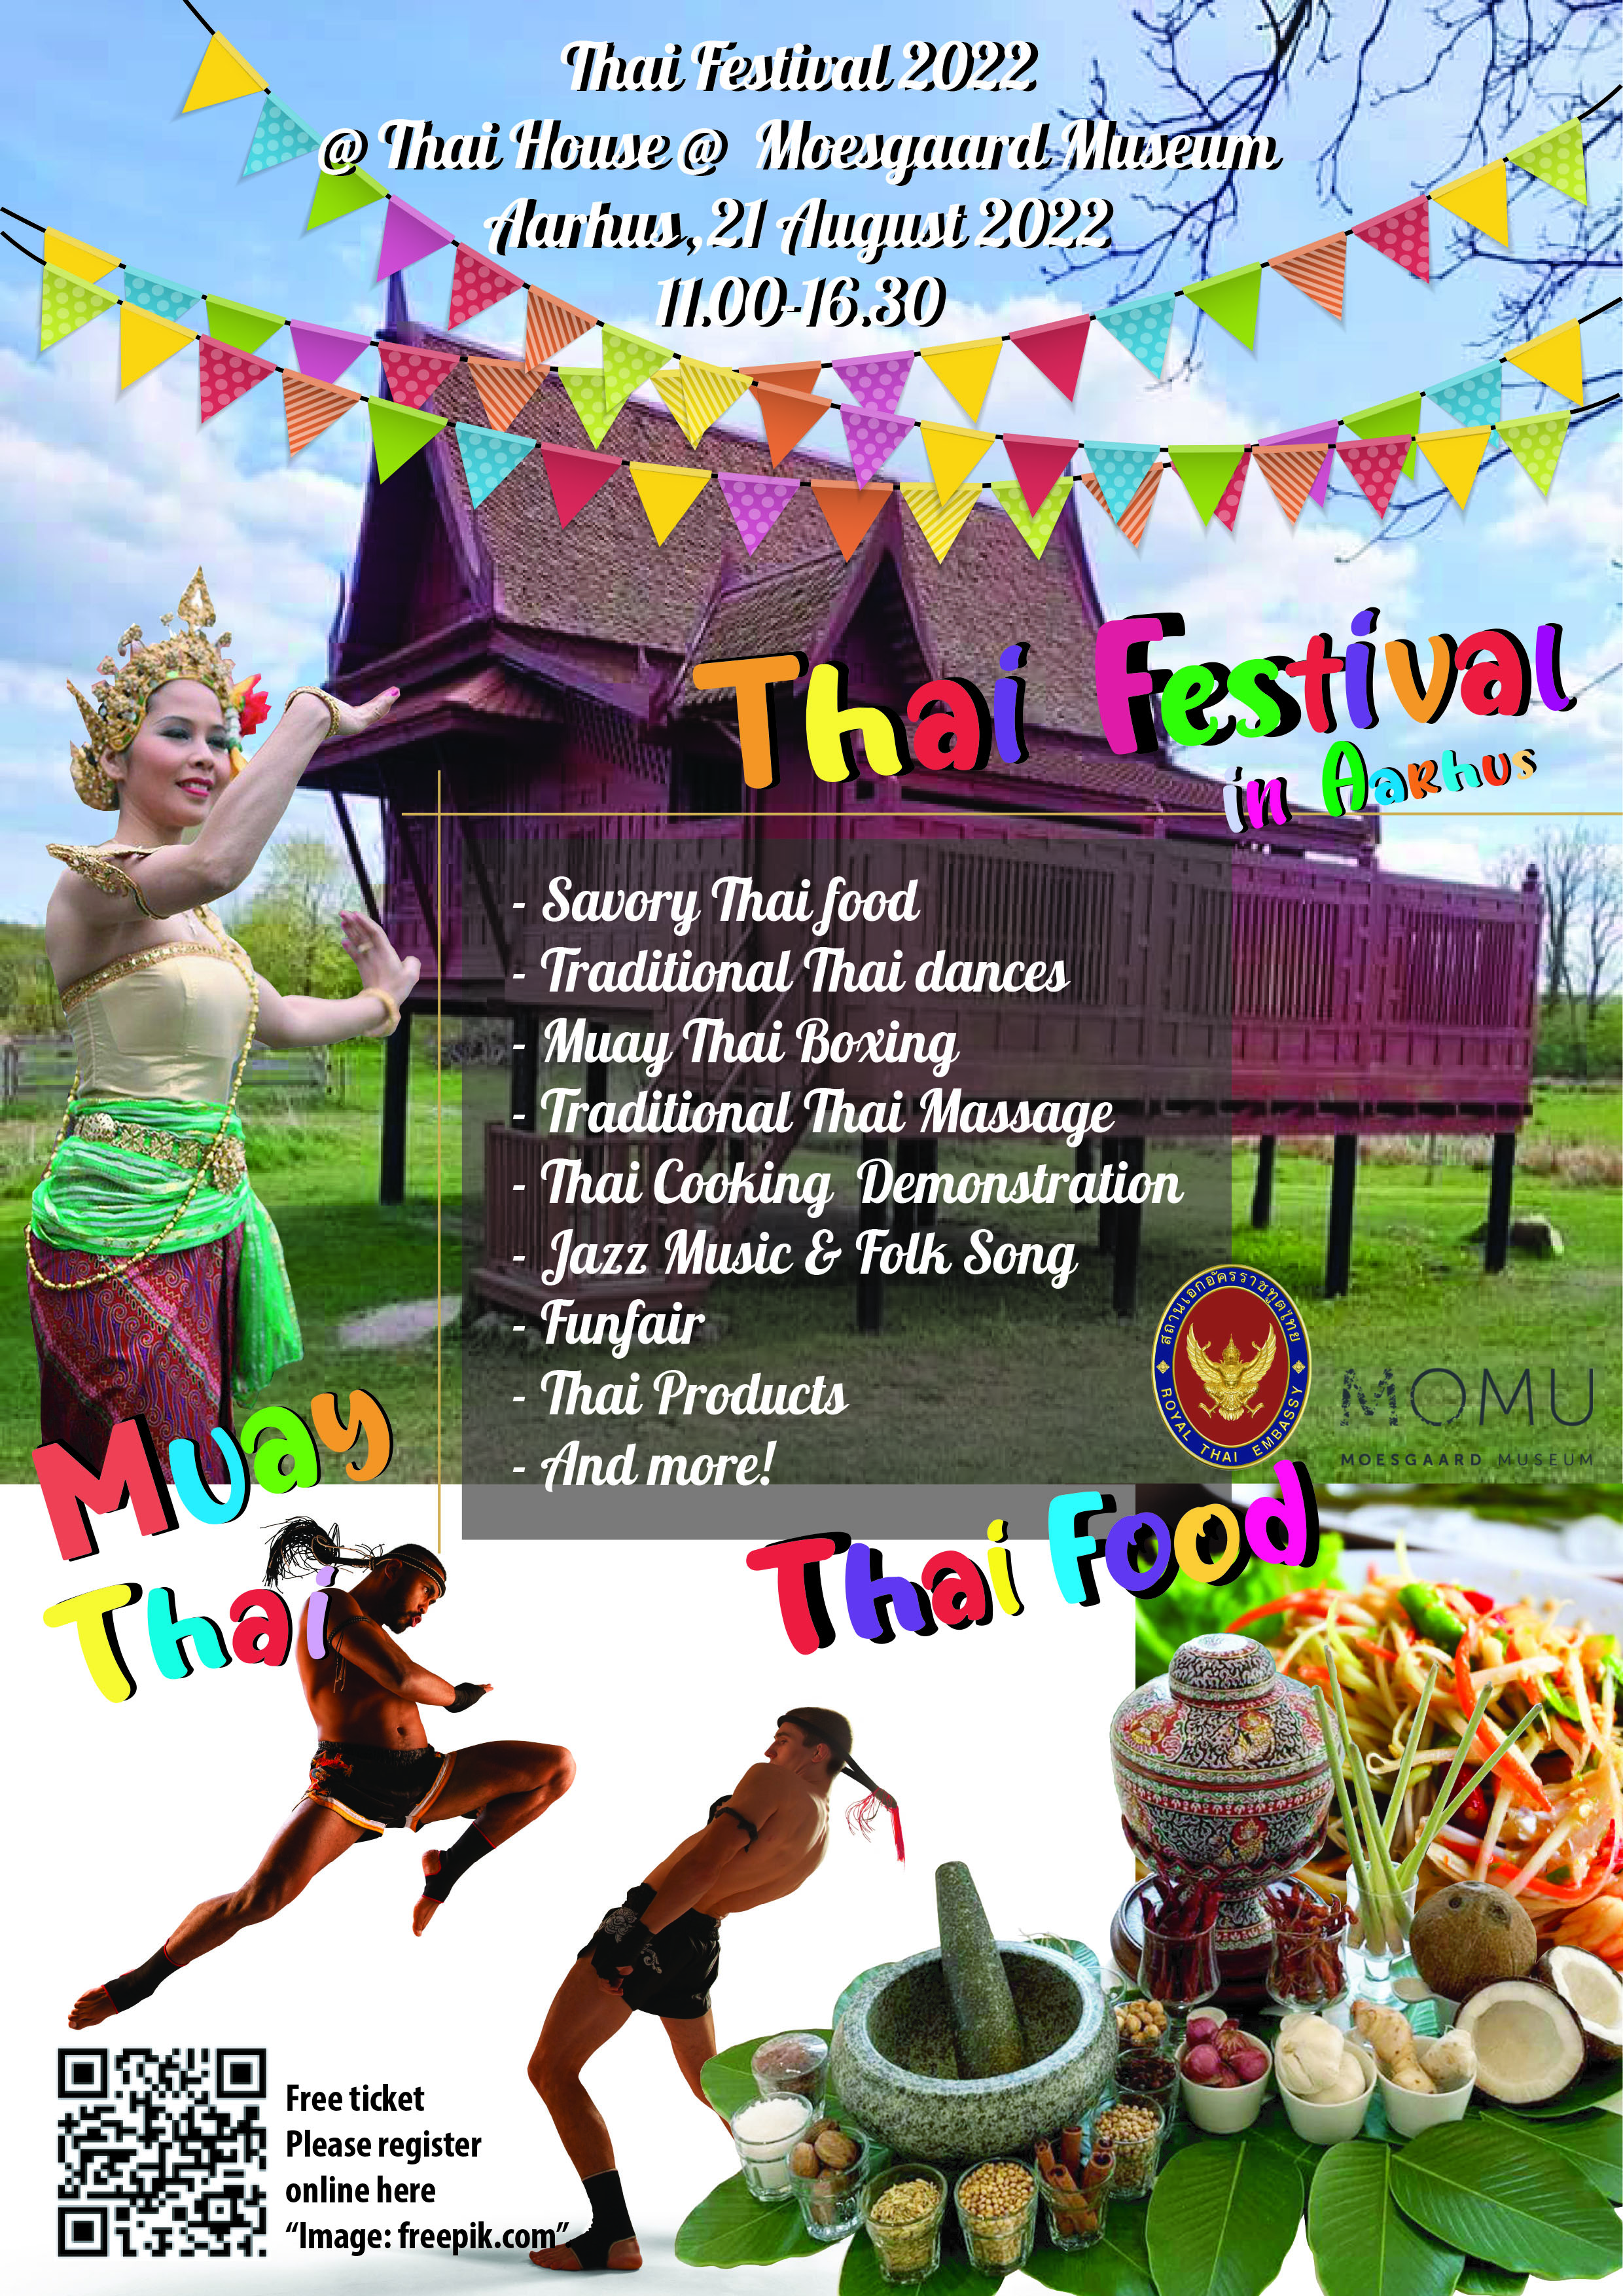 Thaifestival2022-3